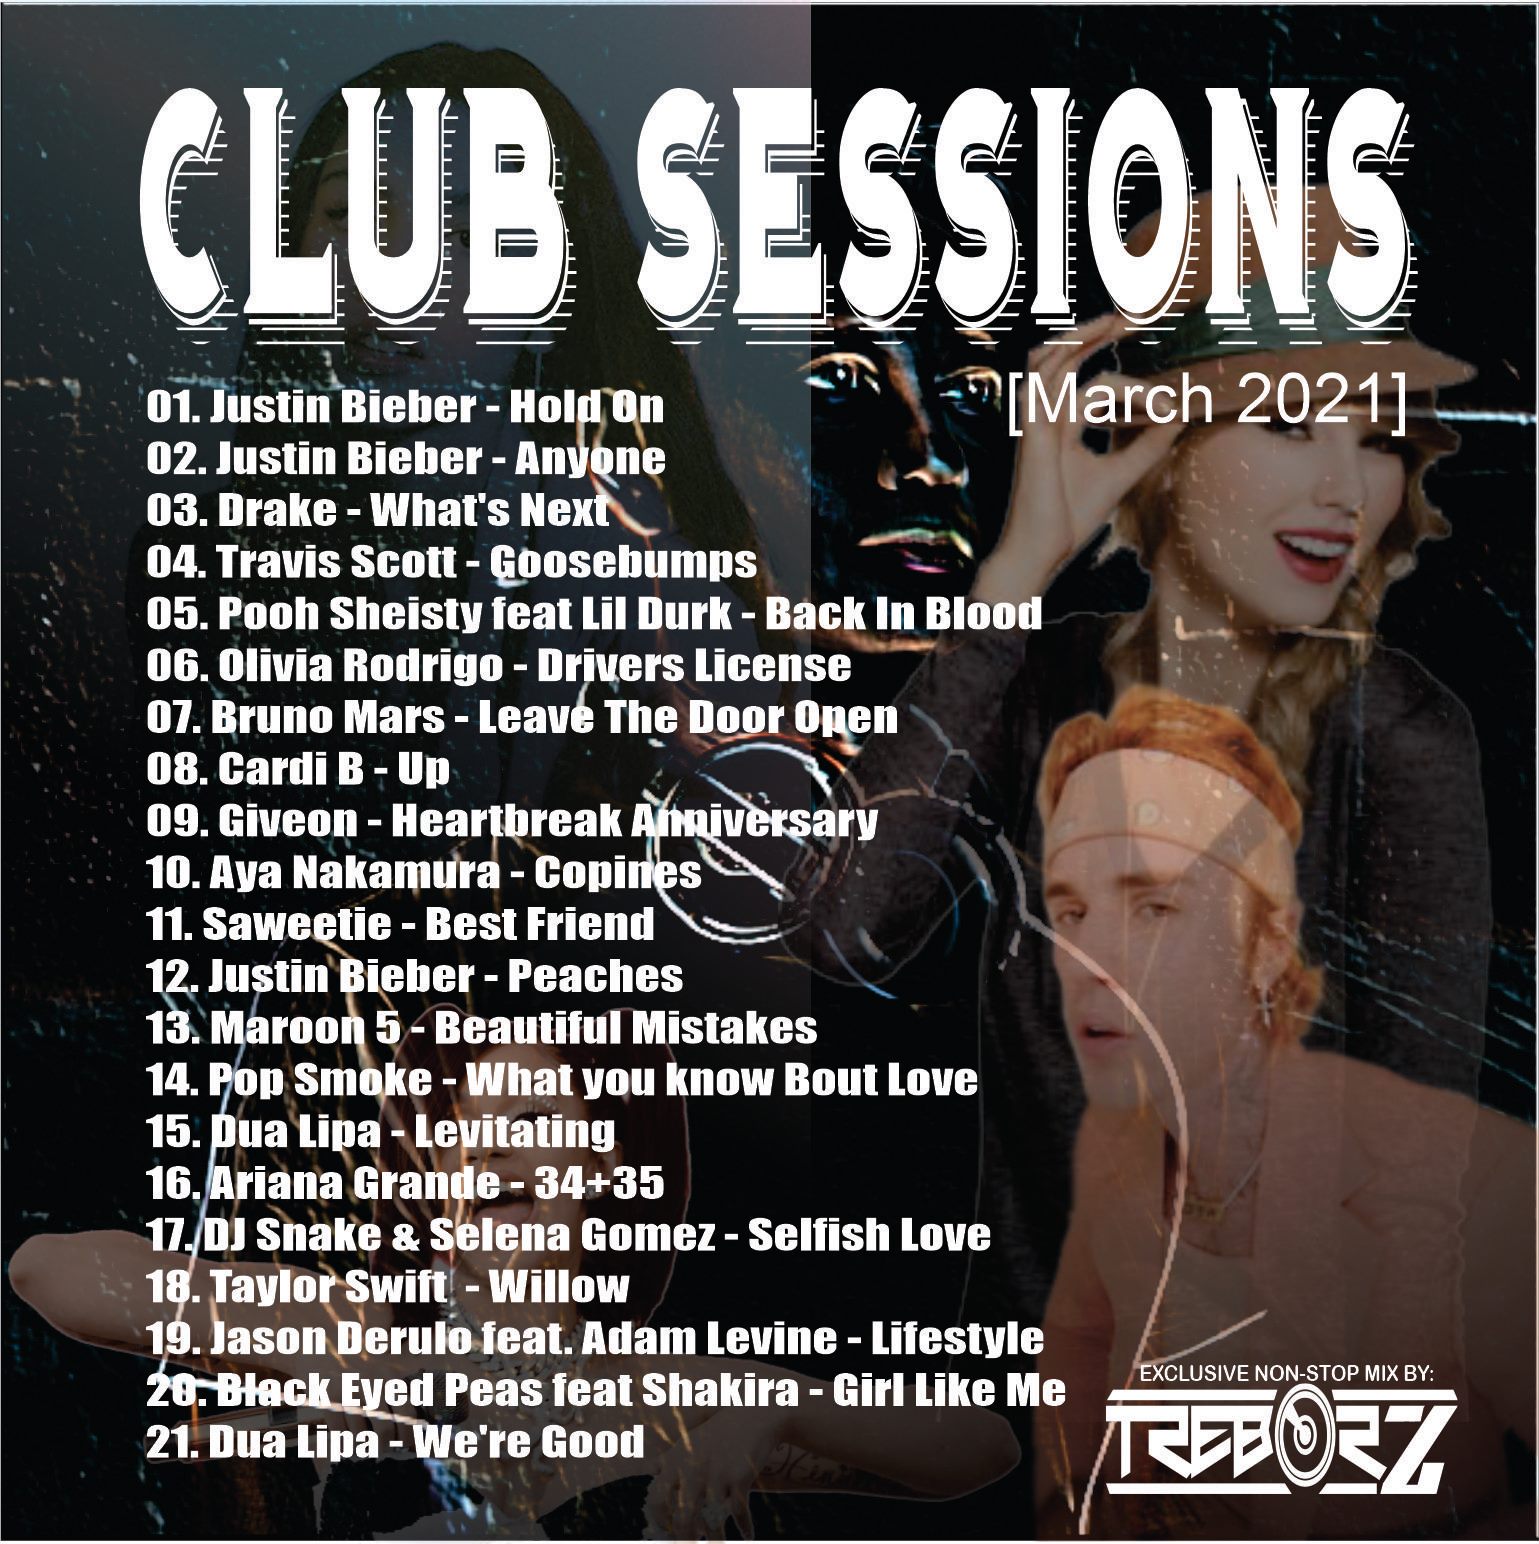 Dj Trebor Z - Club Sessions (March 2021) 2075_2e210c59e301